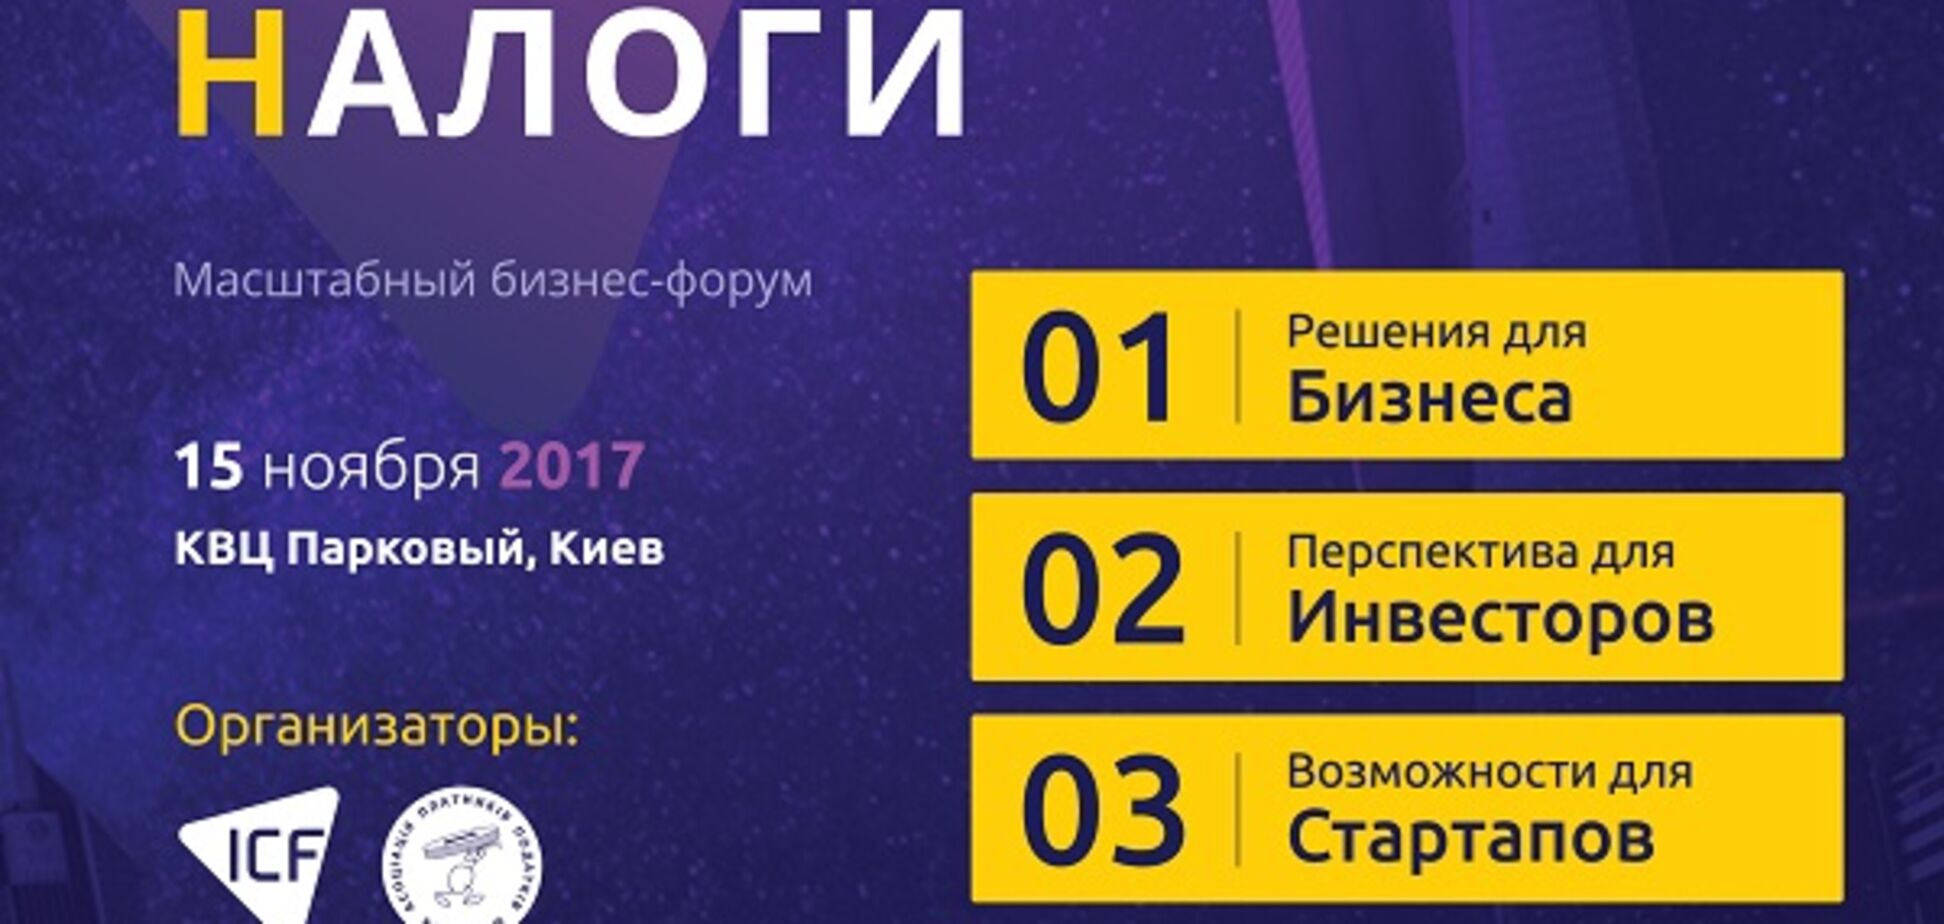 В Киеве состоится масштабный бизнес-форум Level Up Ukraine 2017